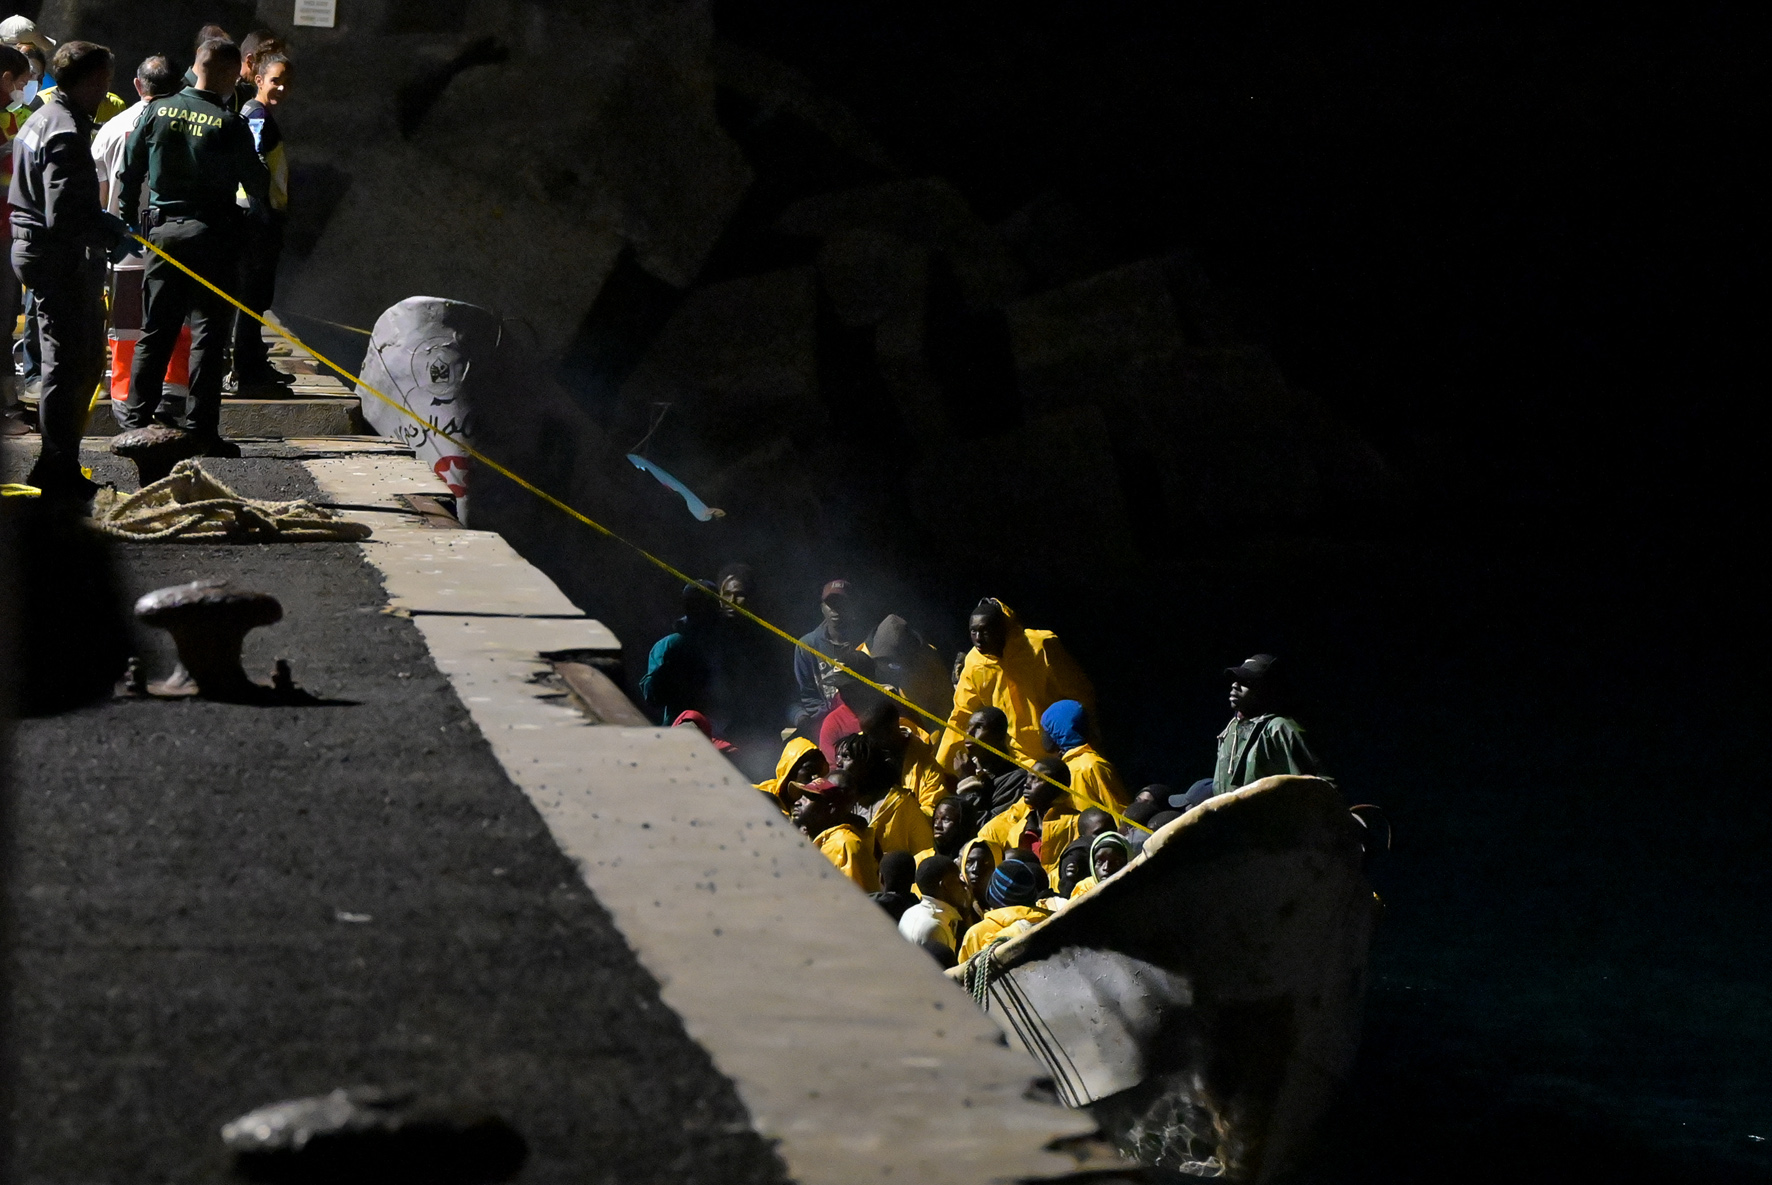 Salvamento Marítimo rescata un cayuco, con 83 personas en la madrugada de hoy en aguas cercanas a El Hierro